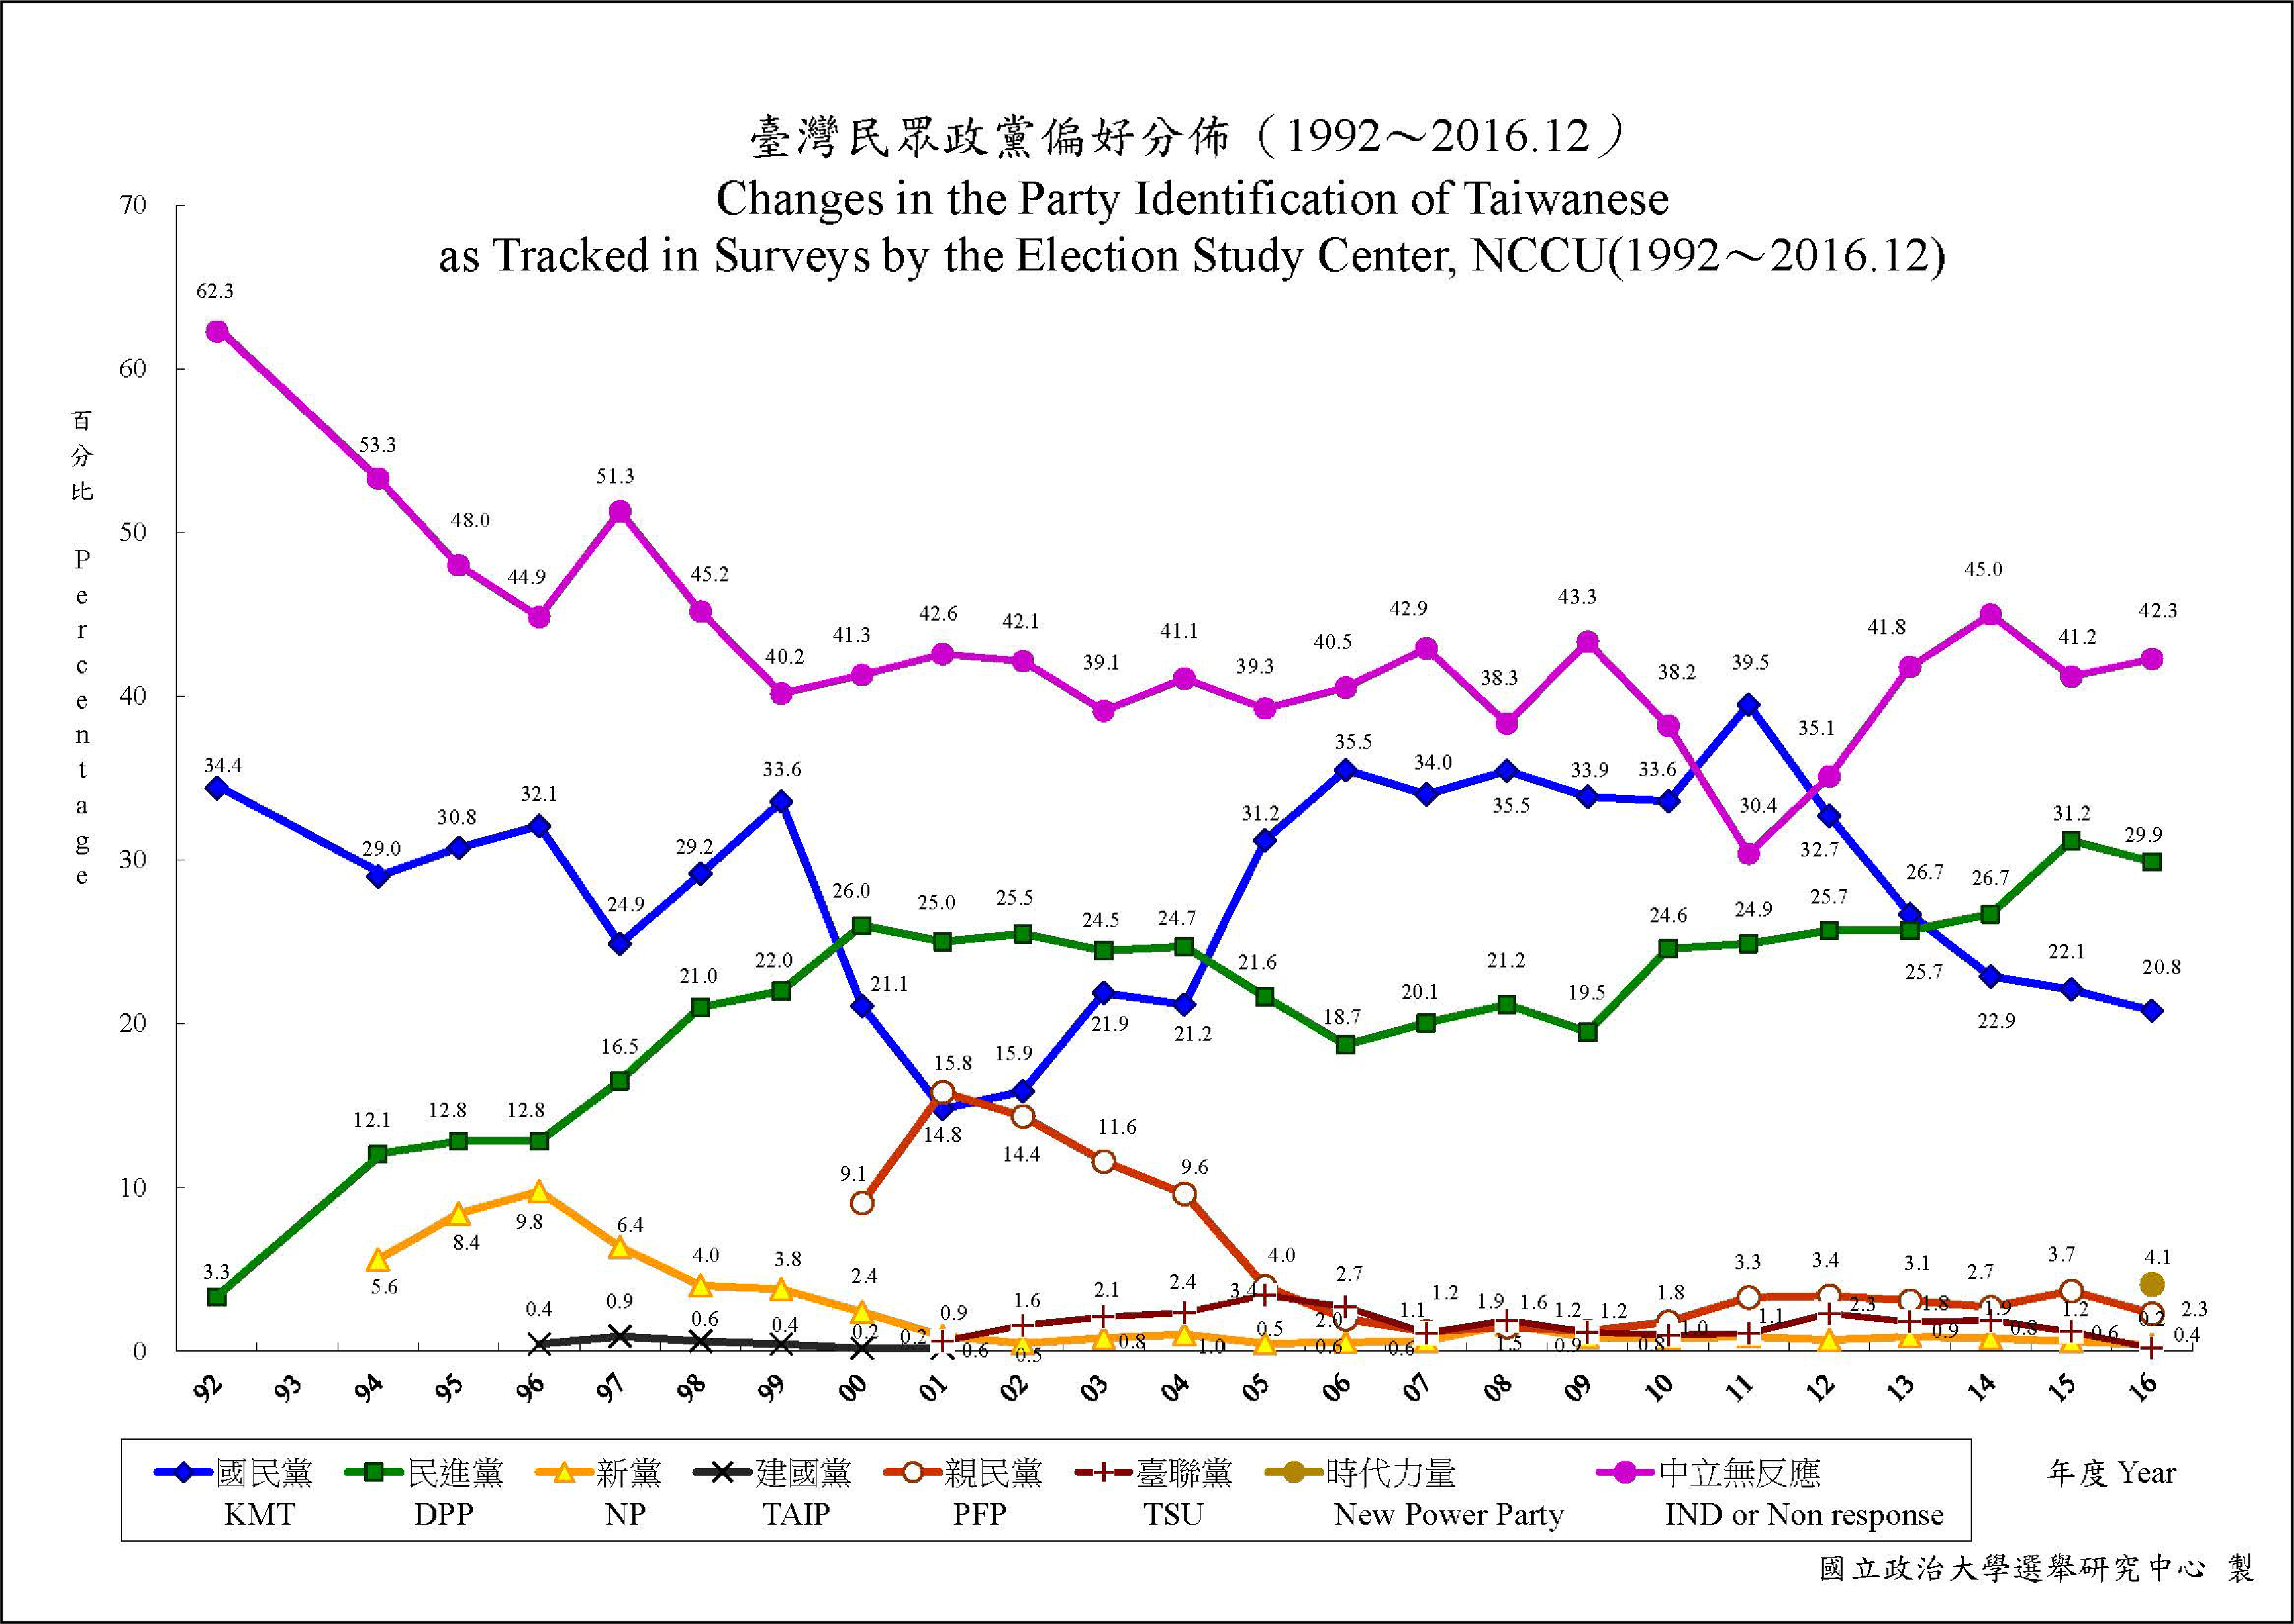 台灣民眾政黨偏好，隨著時代和環境不停變化 資料來源│國立政治大學選舉研究中心重要政治態度分佈趨勢圖